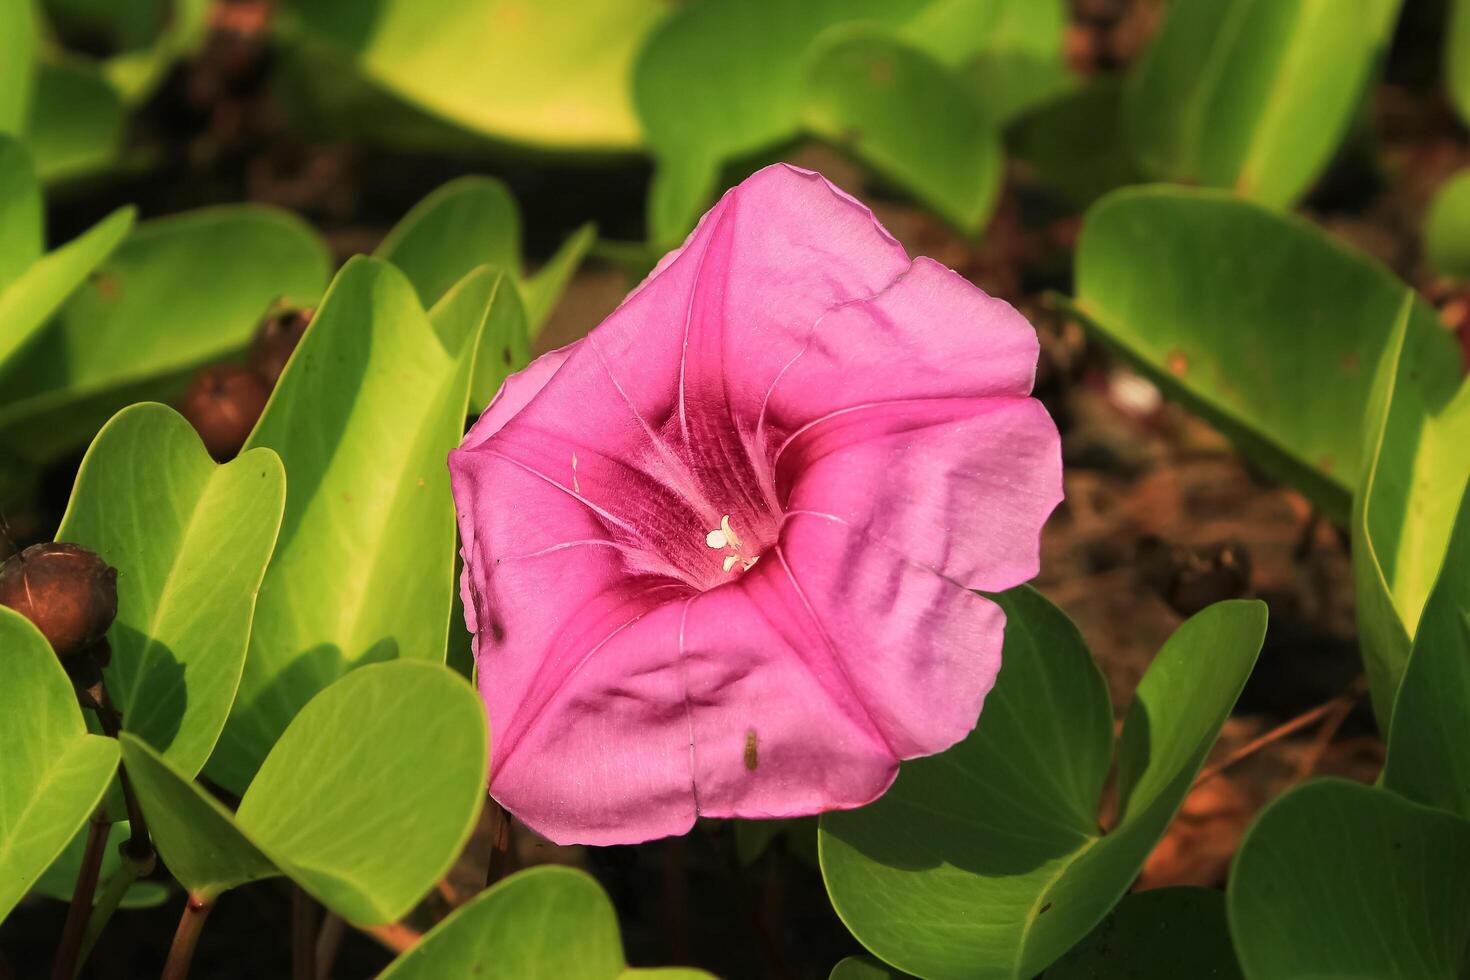 ipomoea flor crecer y floración en el jardín playa. ipomoea tiene botánica nombre ipomoea pes-caprae desde convolvuláceas. ipomoea tiene rosado color verde hojas. eso es herbario planta foto